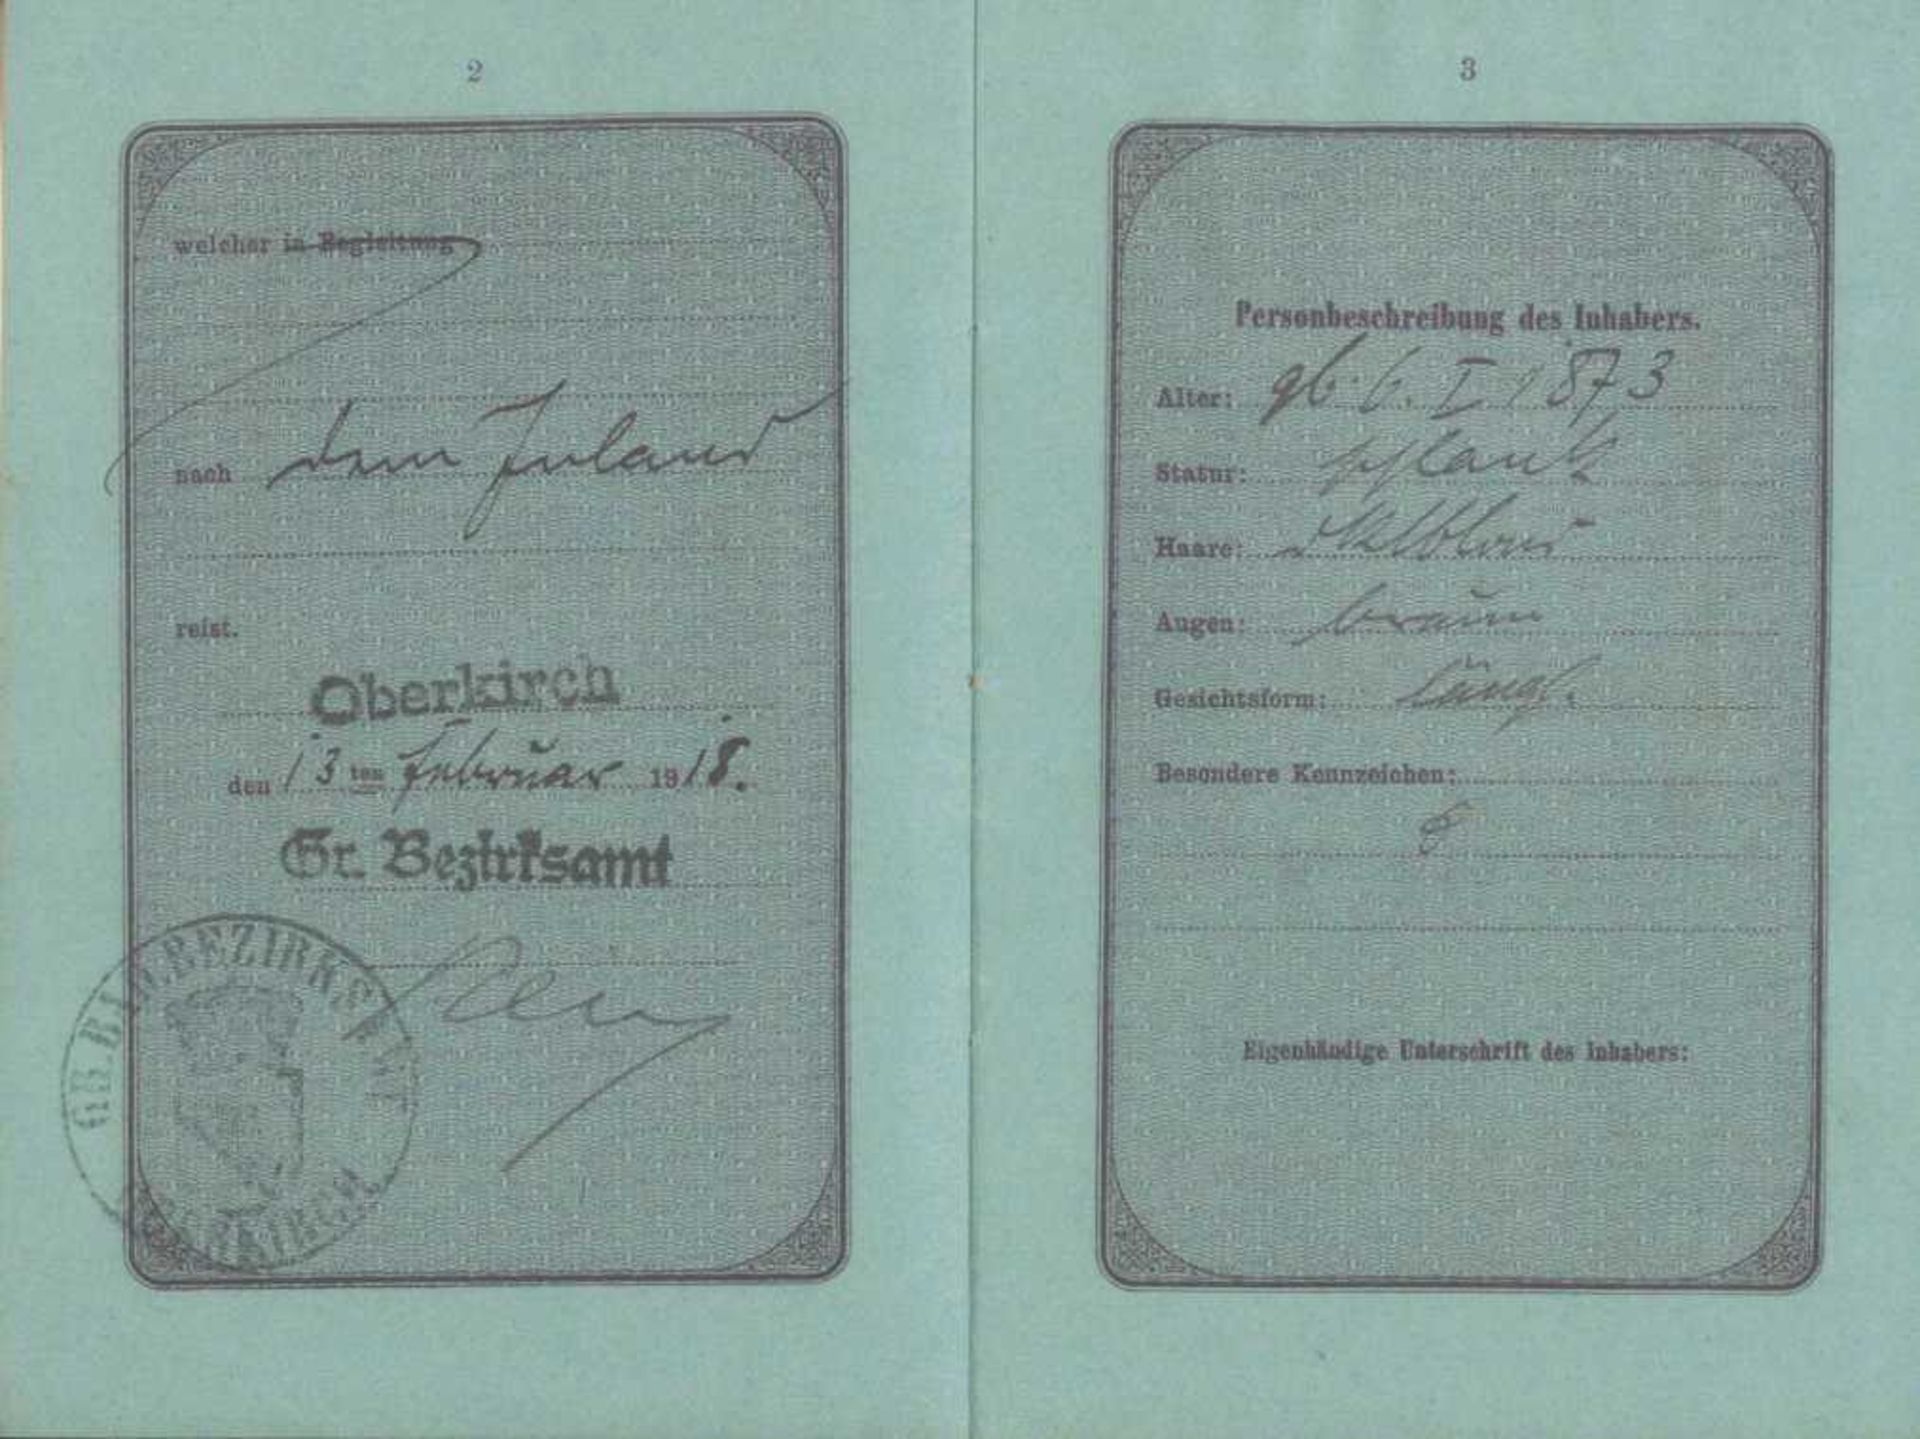 1919 GROSSHERZOGTHUM BADEN; Reise-Pass, OPPENAUReise-Pass des Deutschen Reiches, Inhaber der Notar - Image 2 of 3